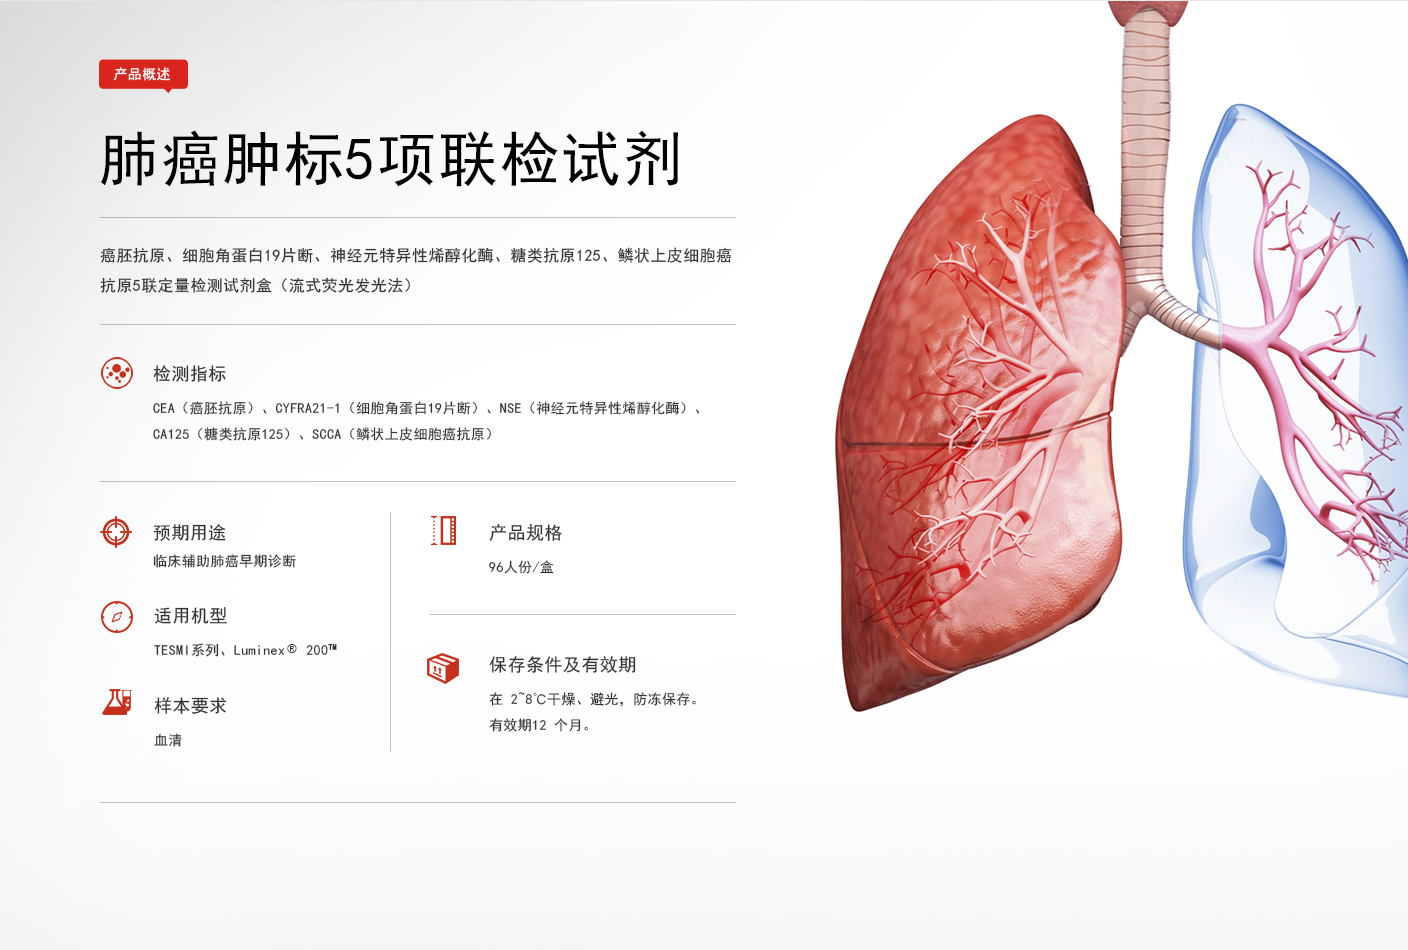 肺癌案例 | 左肺恶性肿瘤治疗病例分析_参莲